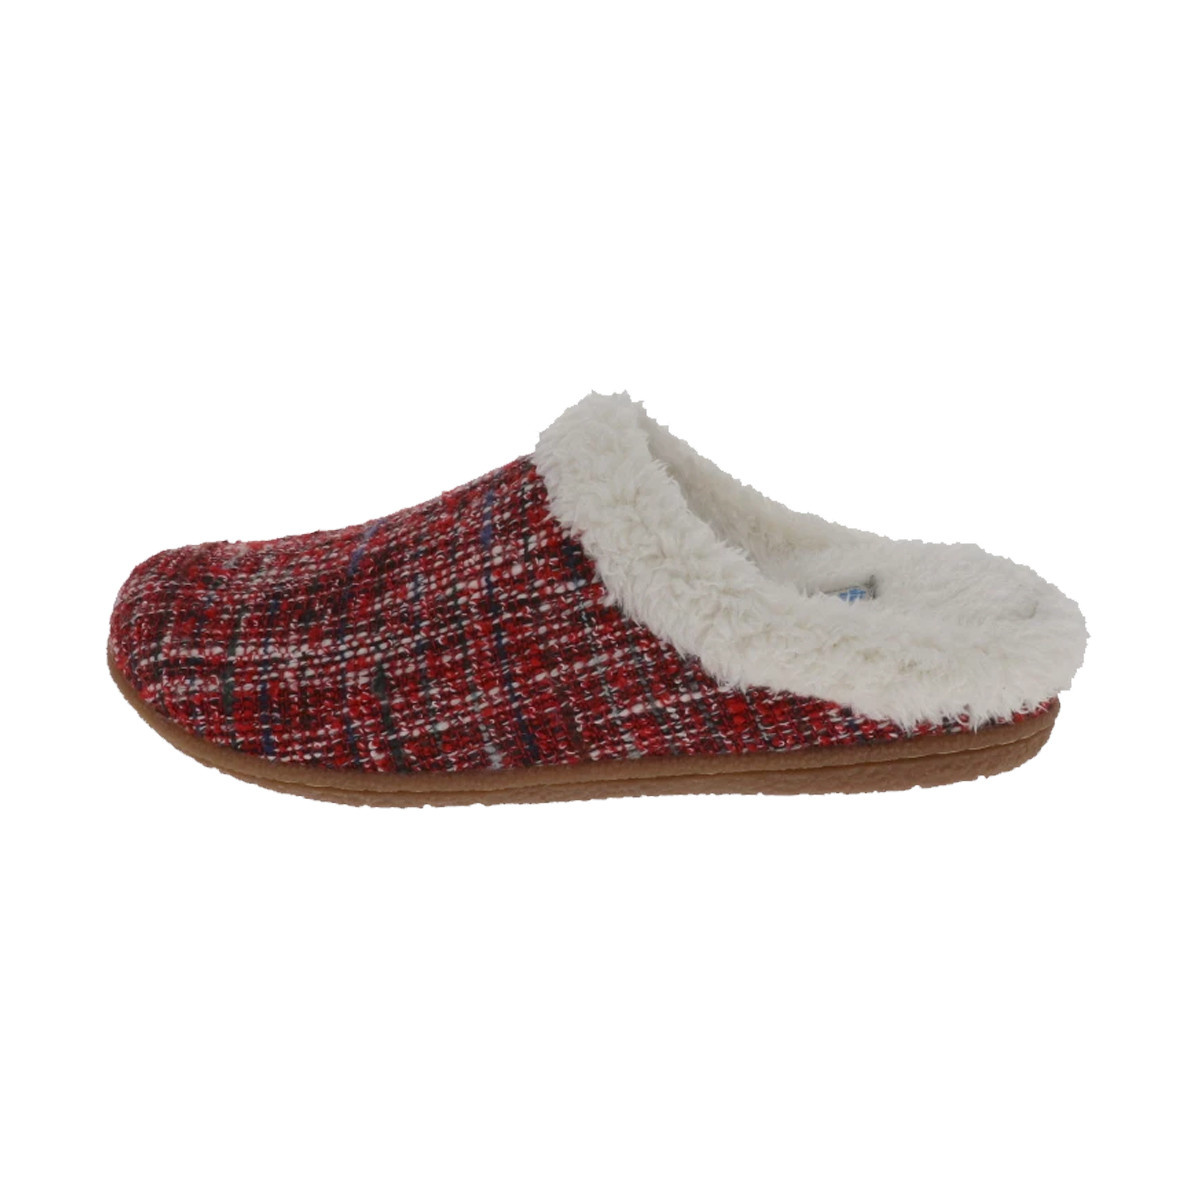 foamtreads women's slippers